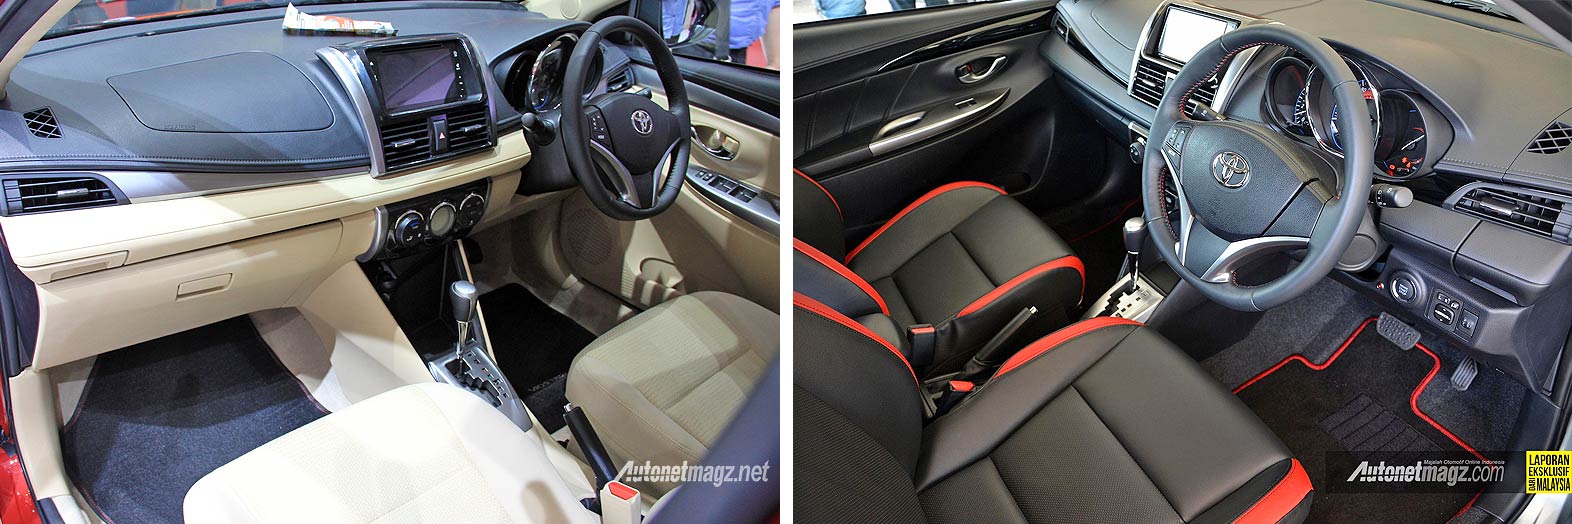 Gambar Modifikasi Toyota Vios Trd Sportivo Terbaru Modifikasi Mobil